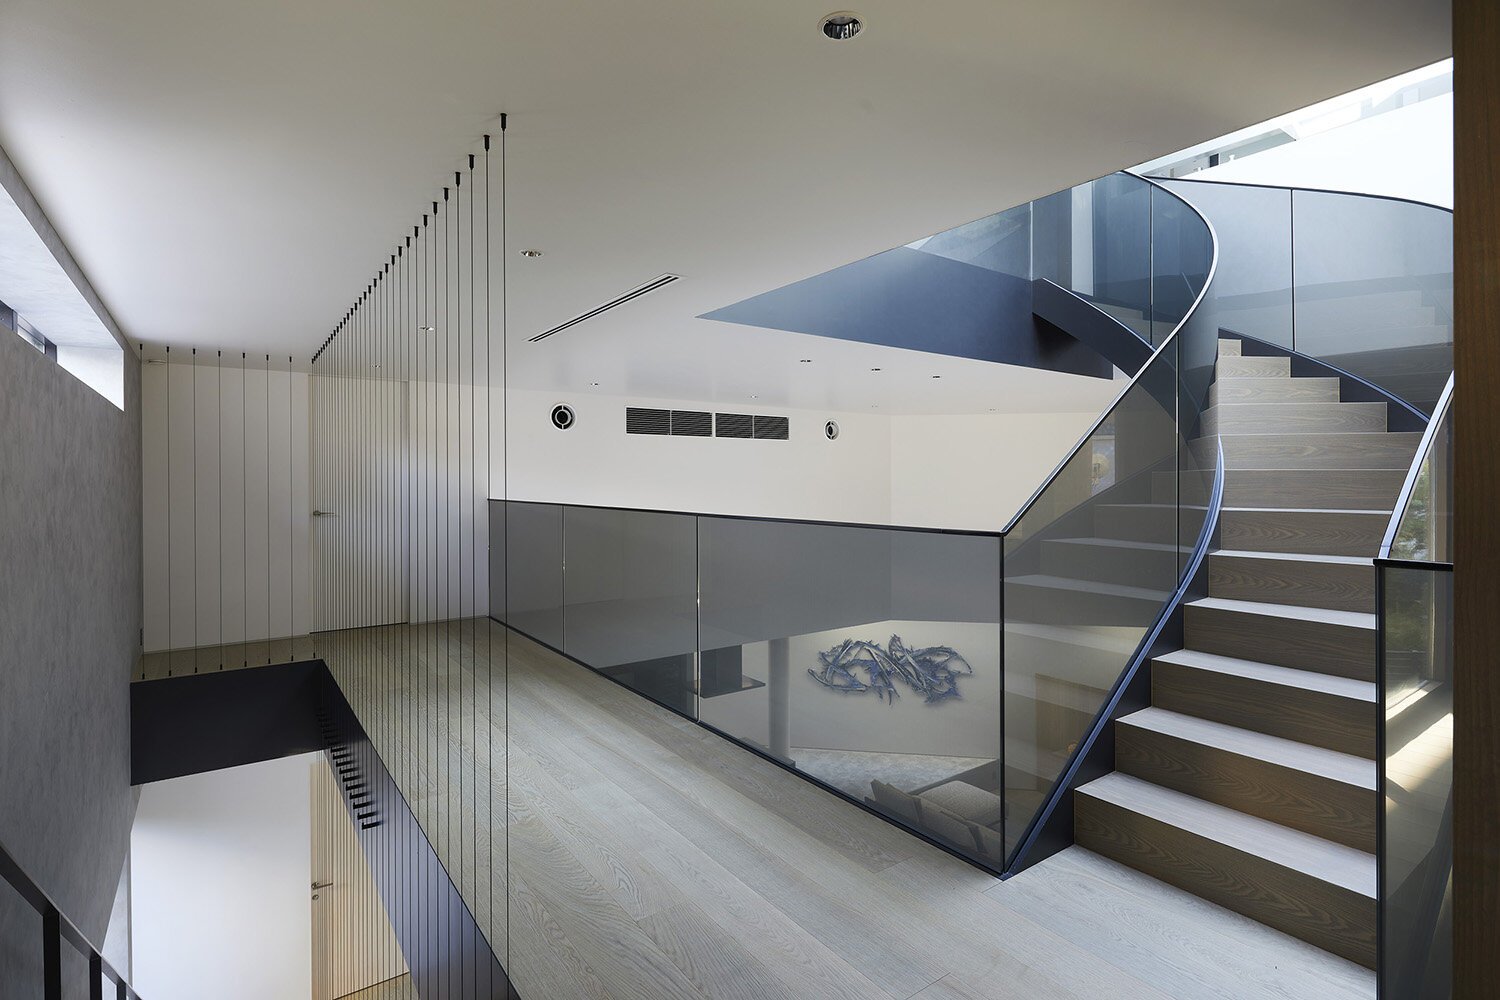  建築家 sinatoシナトの大野力が設計した住宅Shoto S。2階のインテリア 